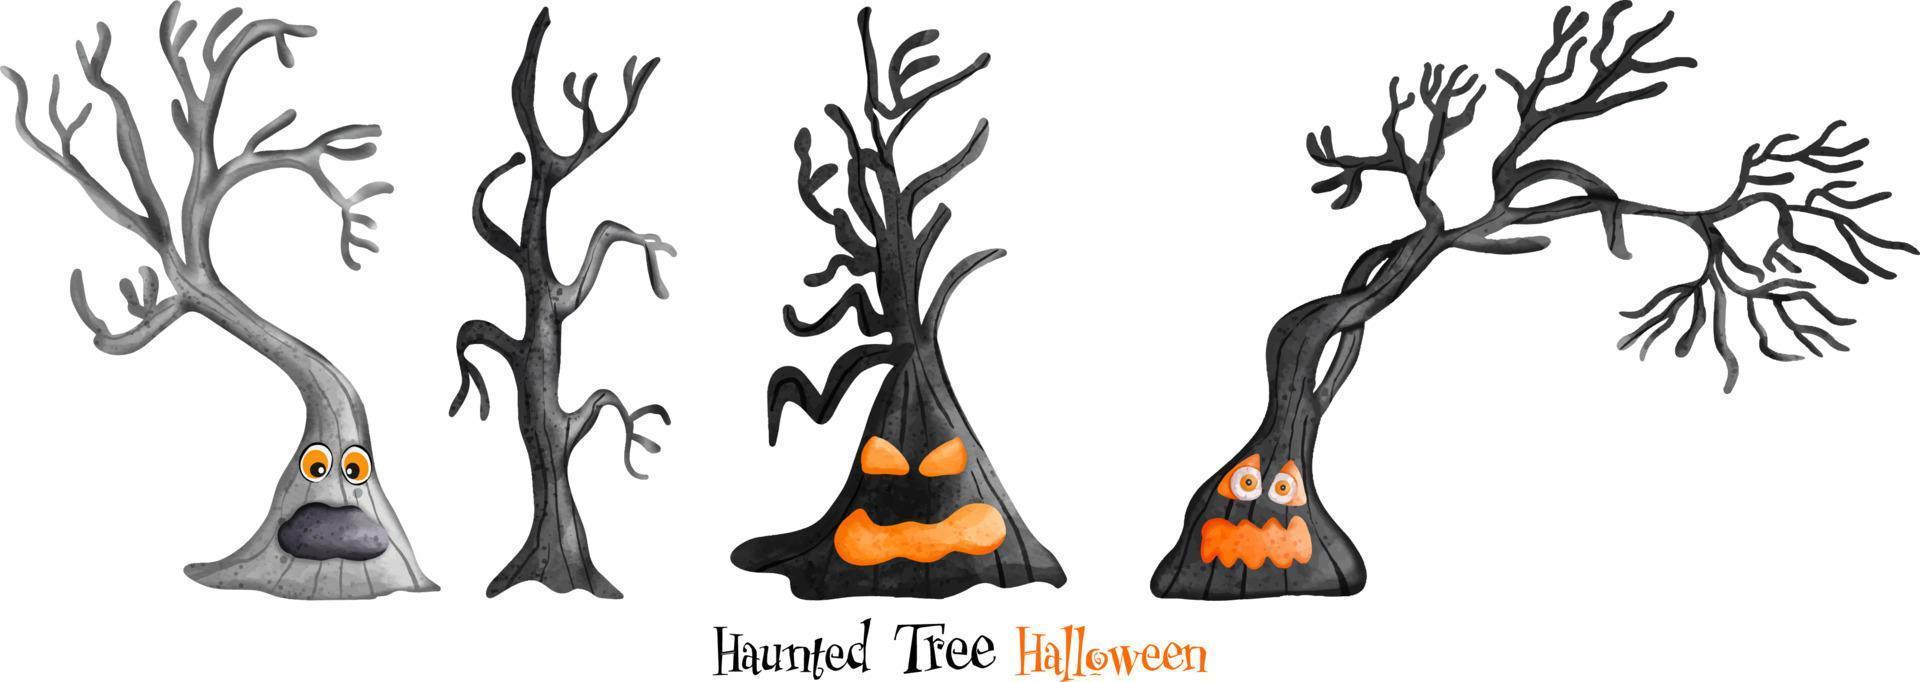 Happy Halloween. Halloween Haunted Tree. Halloween element. Halloween decoration vector